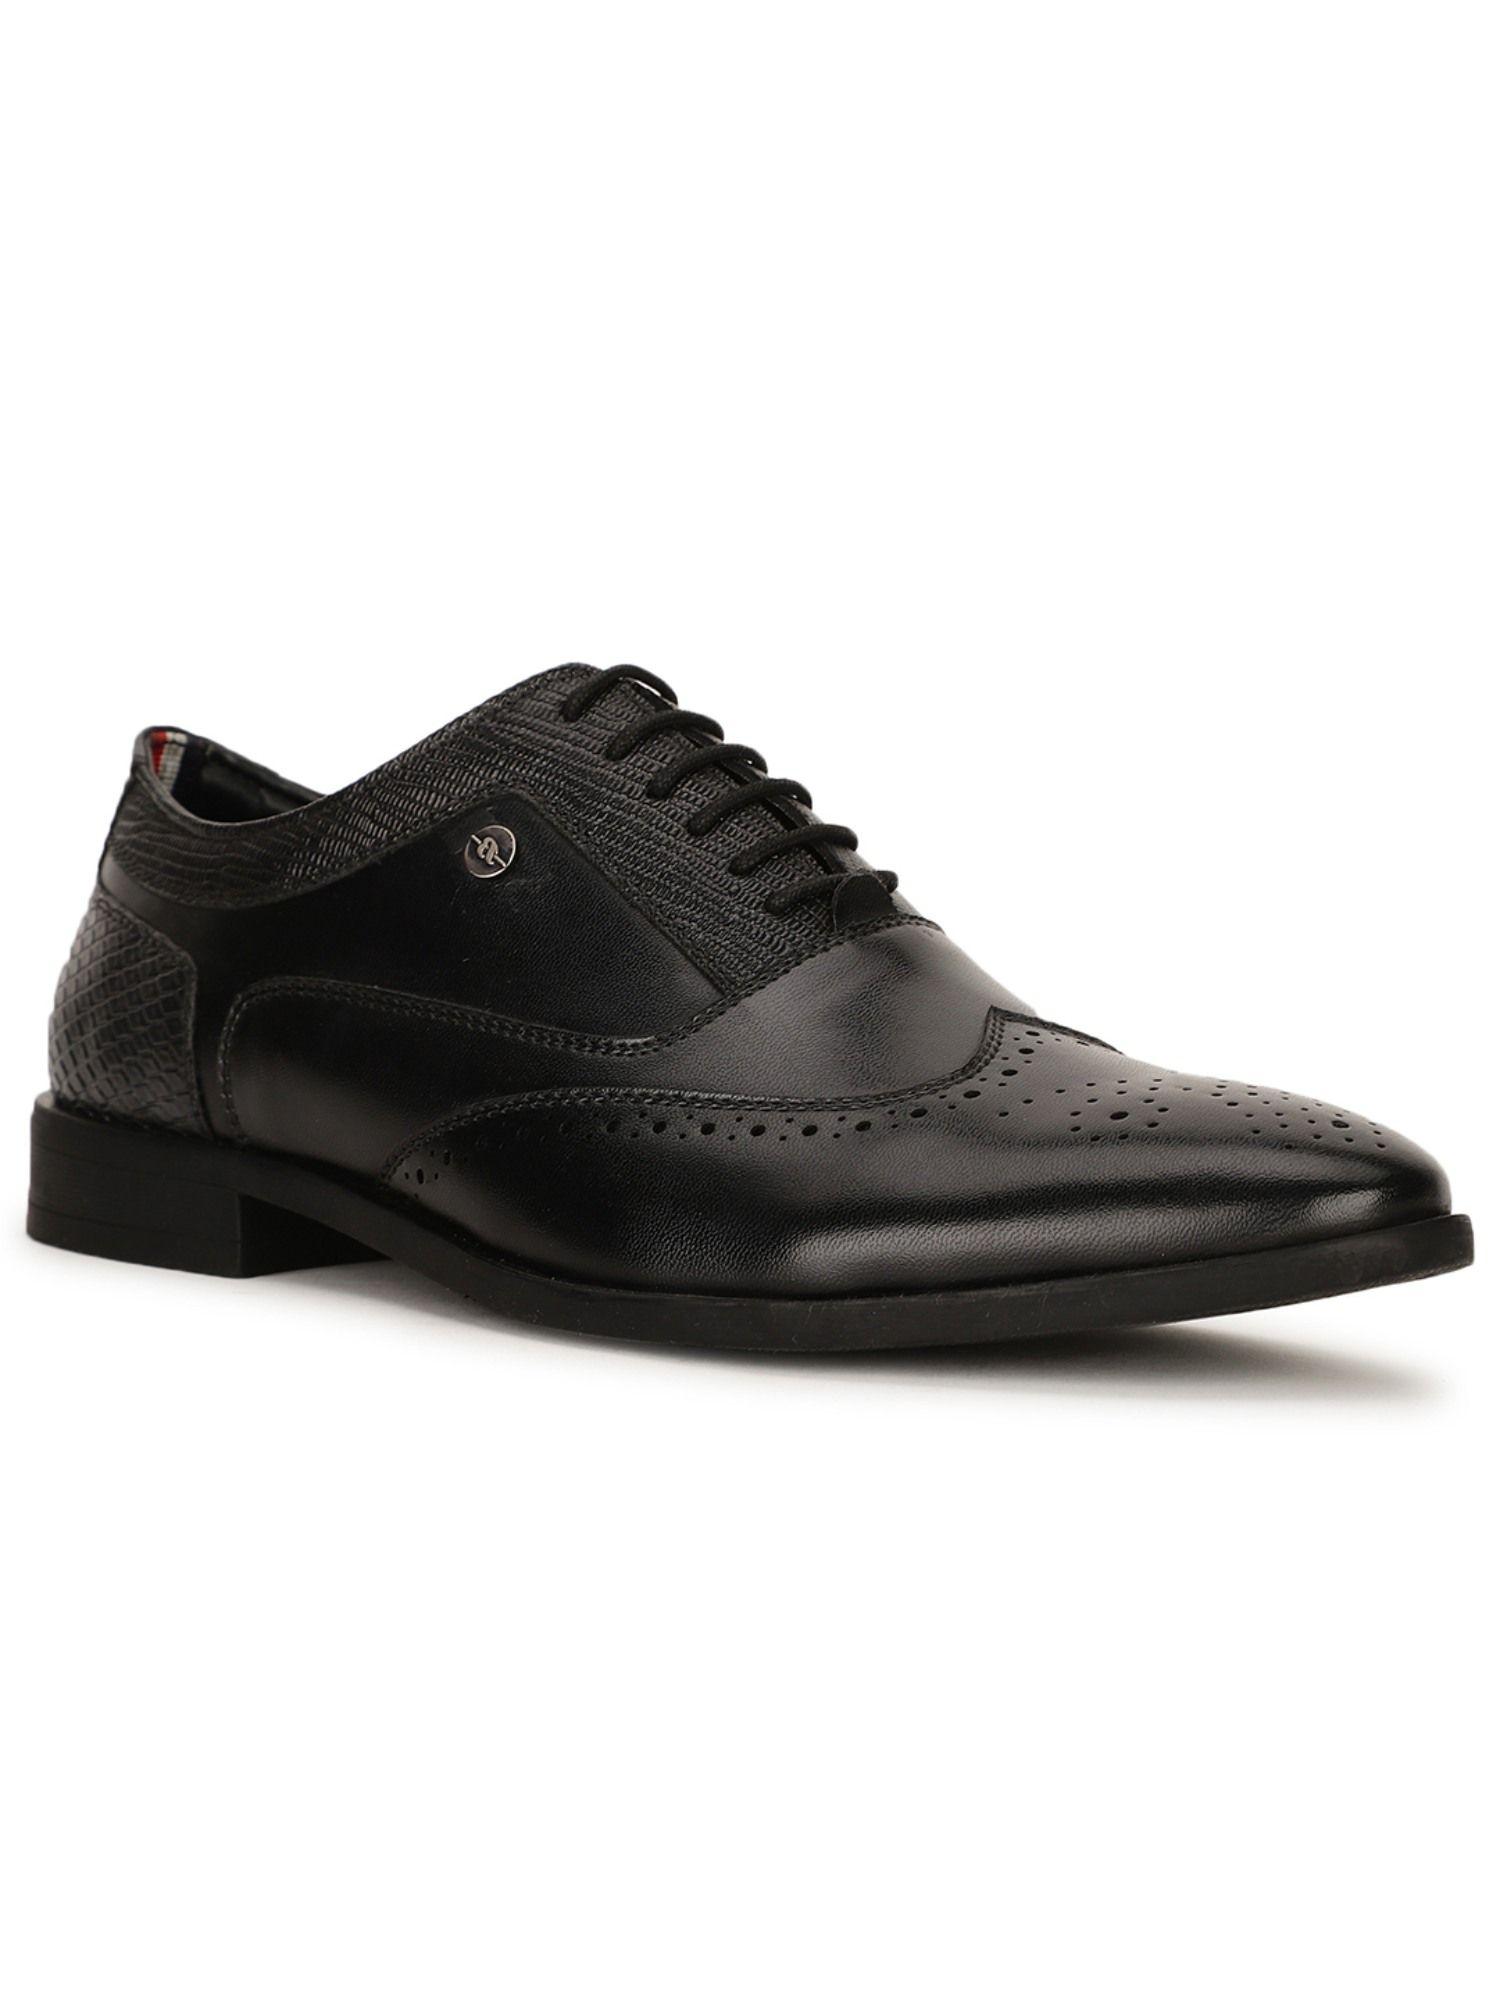 black-formal-shoes-for-men